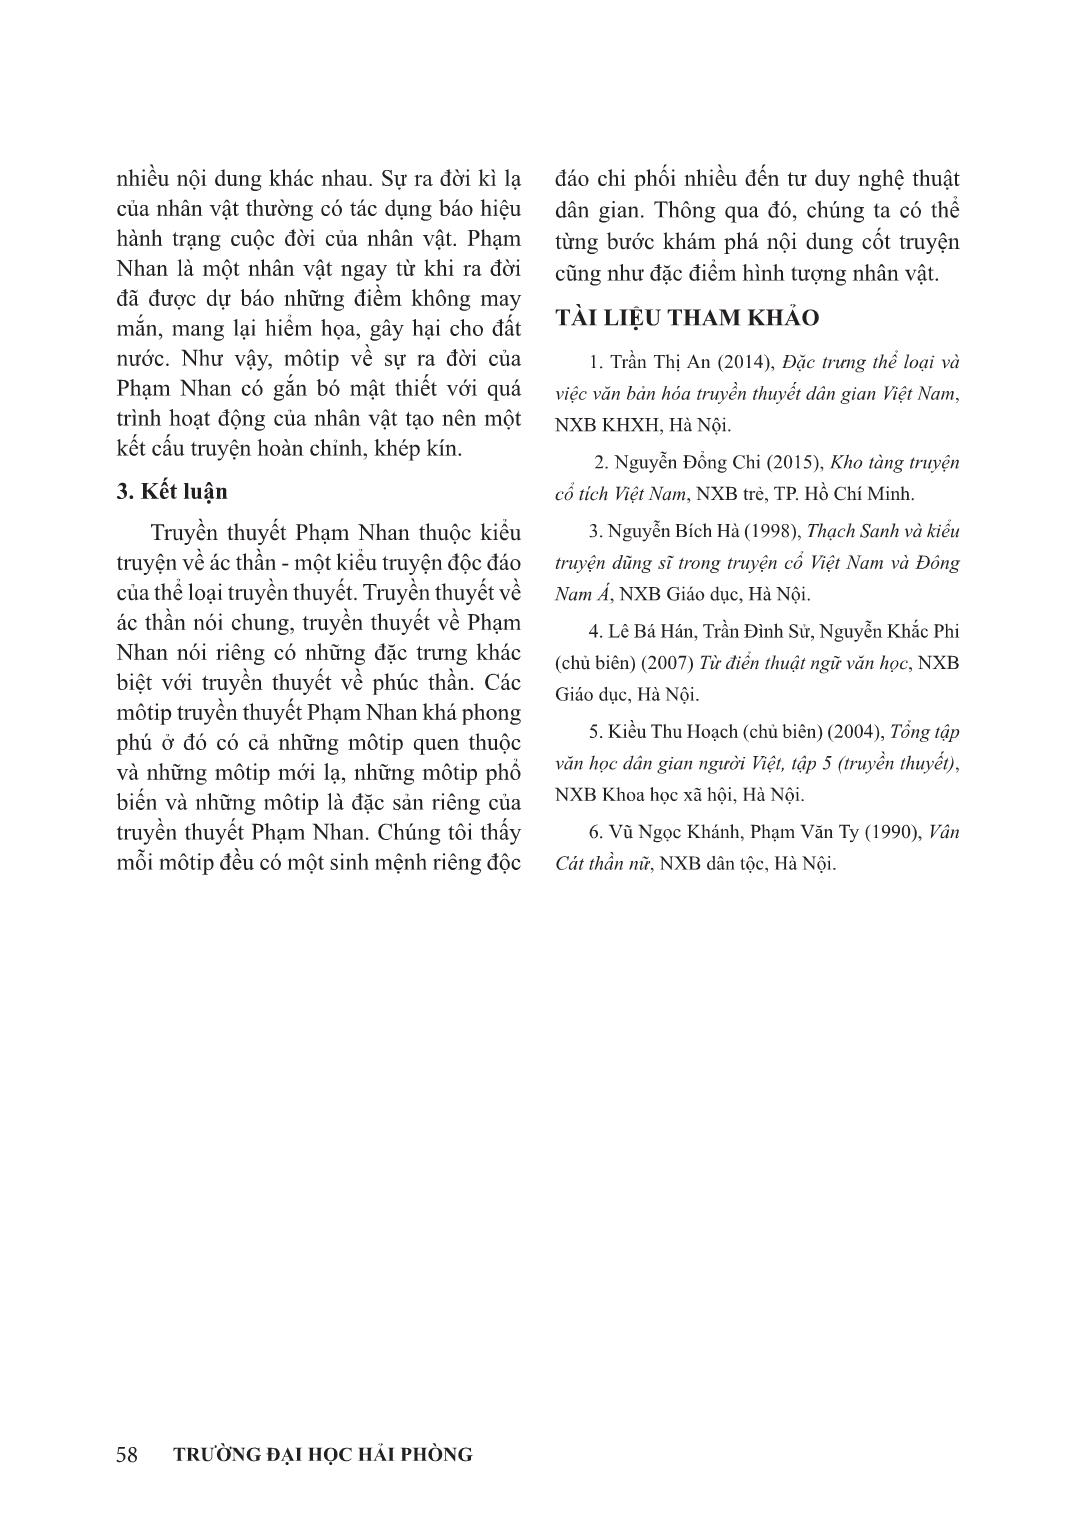 Môtip sự ra đời kì lạ trong truyền thuyết Phạm Nhan trang 5